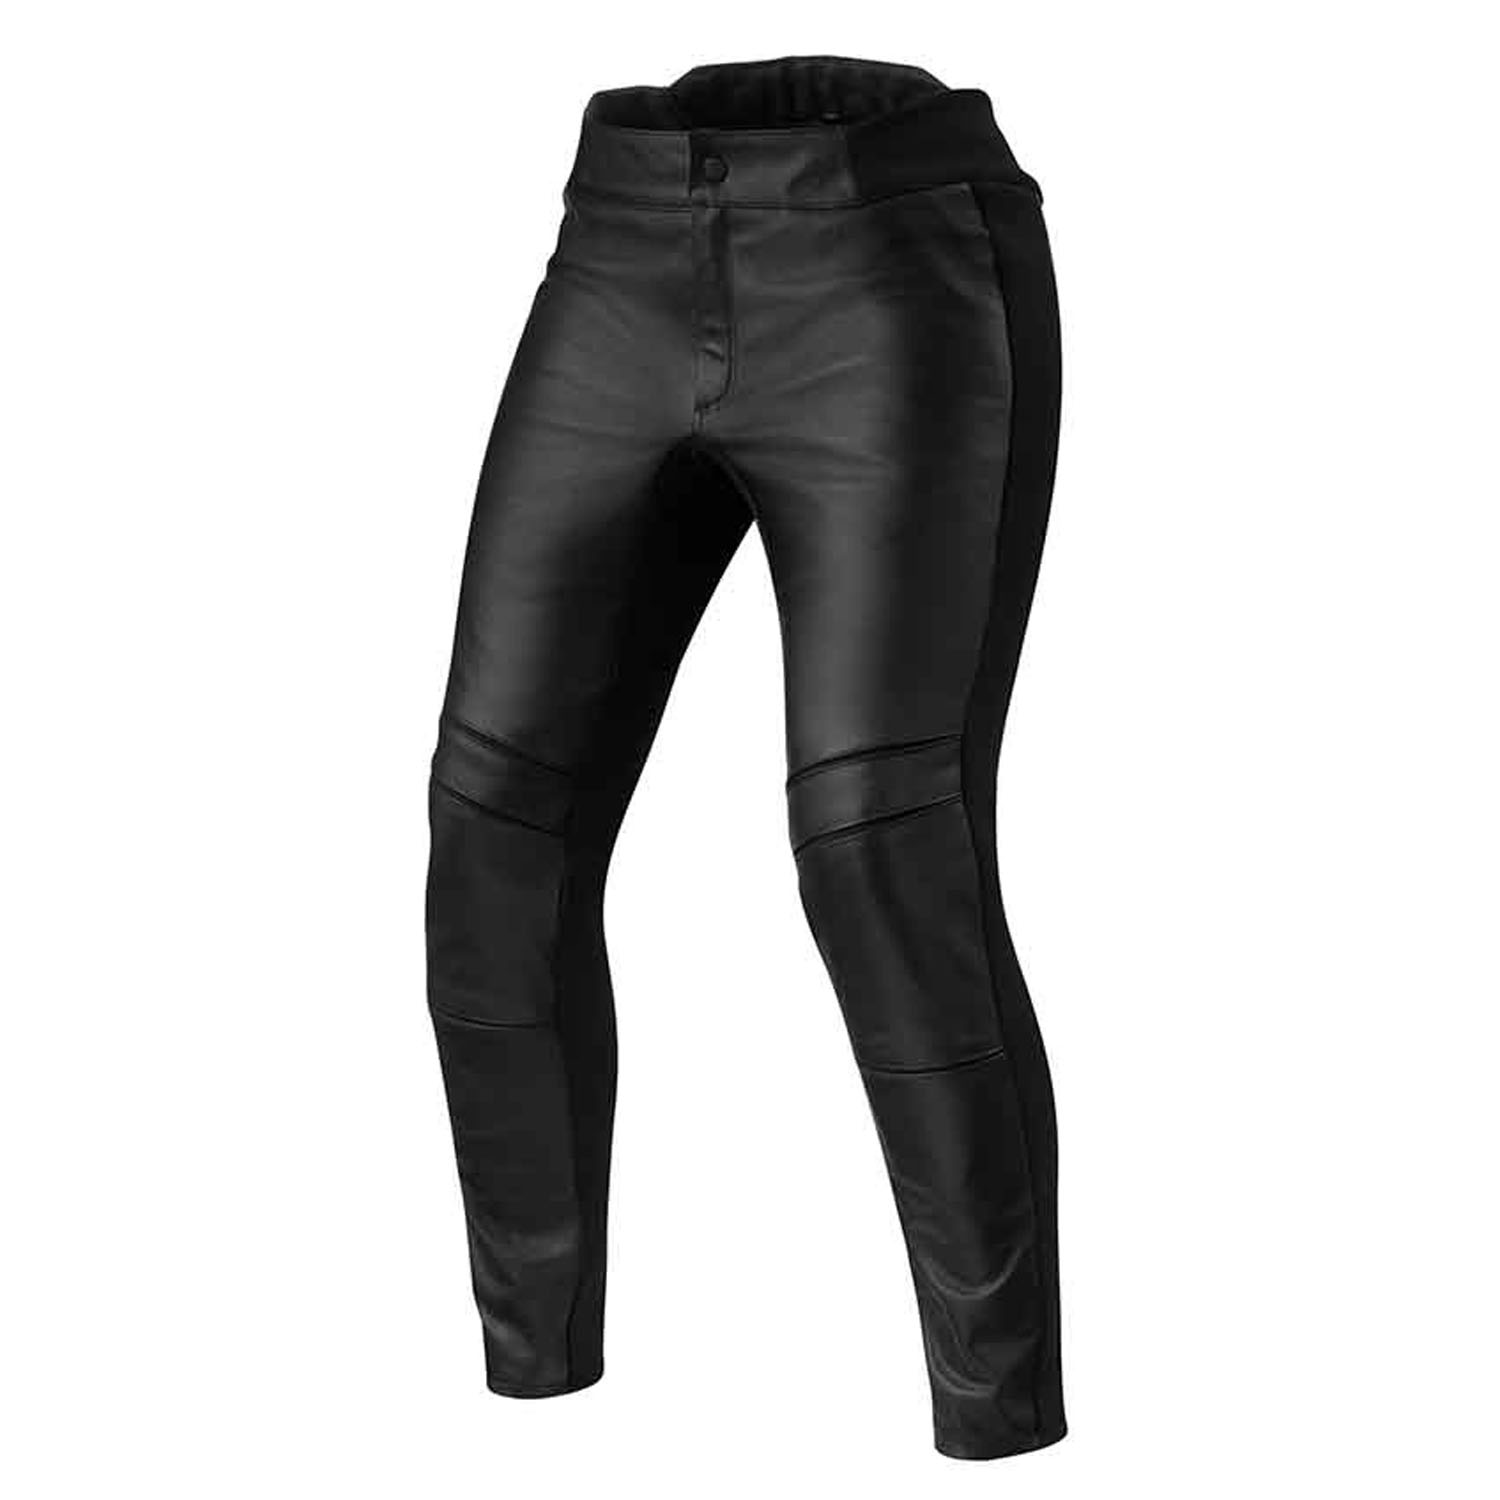 Image of REV'IT! Maci Ladies Black Long Motorcycle Pants Größe 38